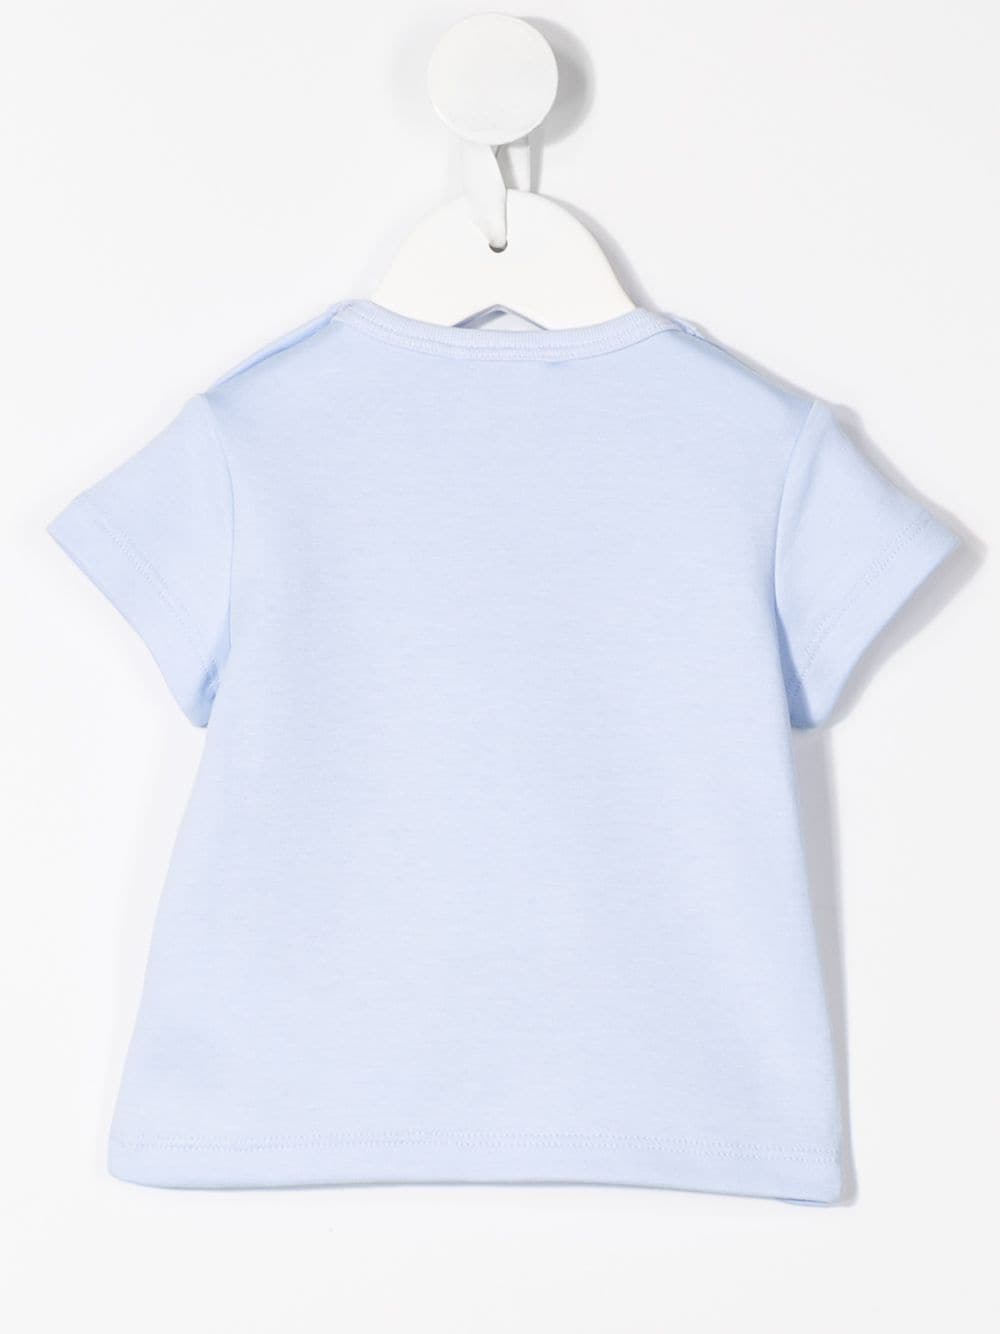 Baby Boys Light Blue Printing Cotton T-Shirt